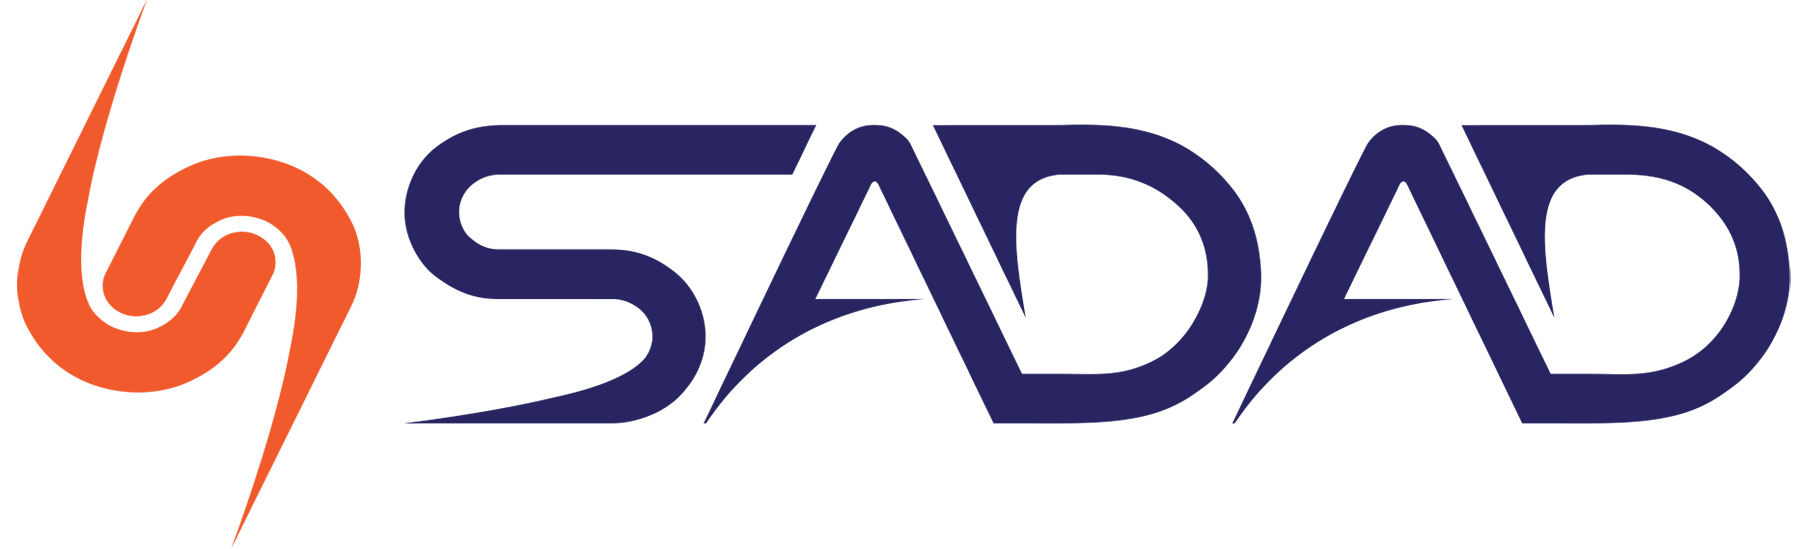 Dadevarzi-Sadad-Logo-JPG-Way2pay-97-12-07